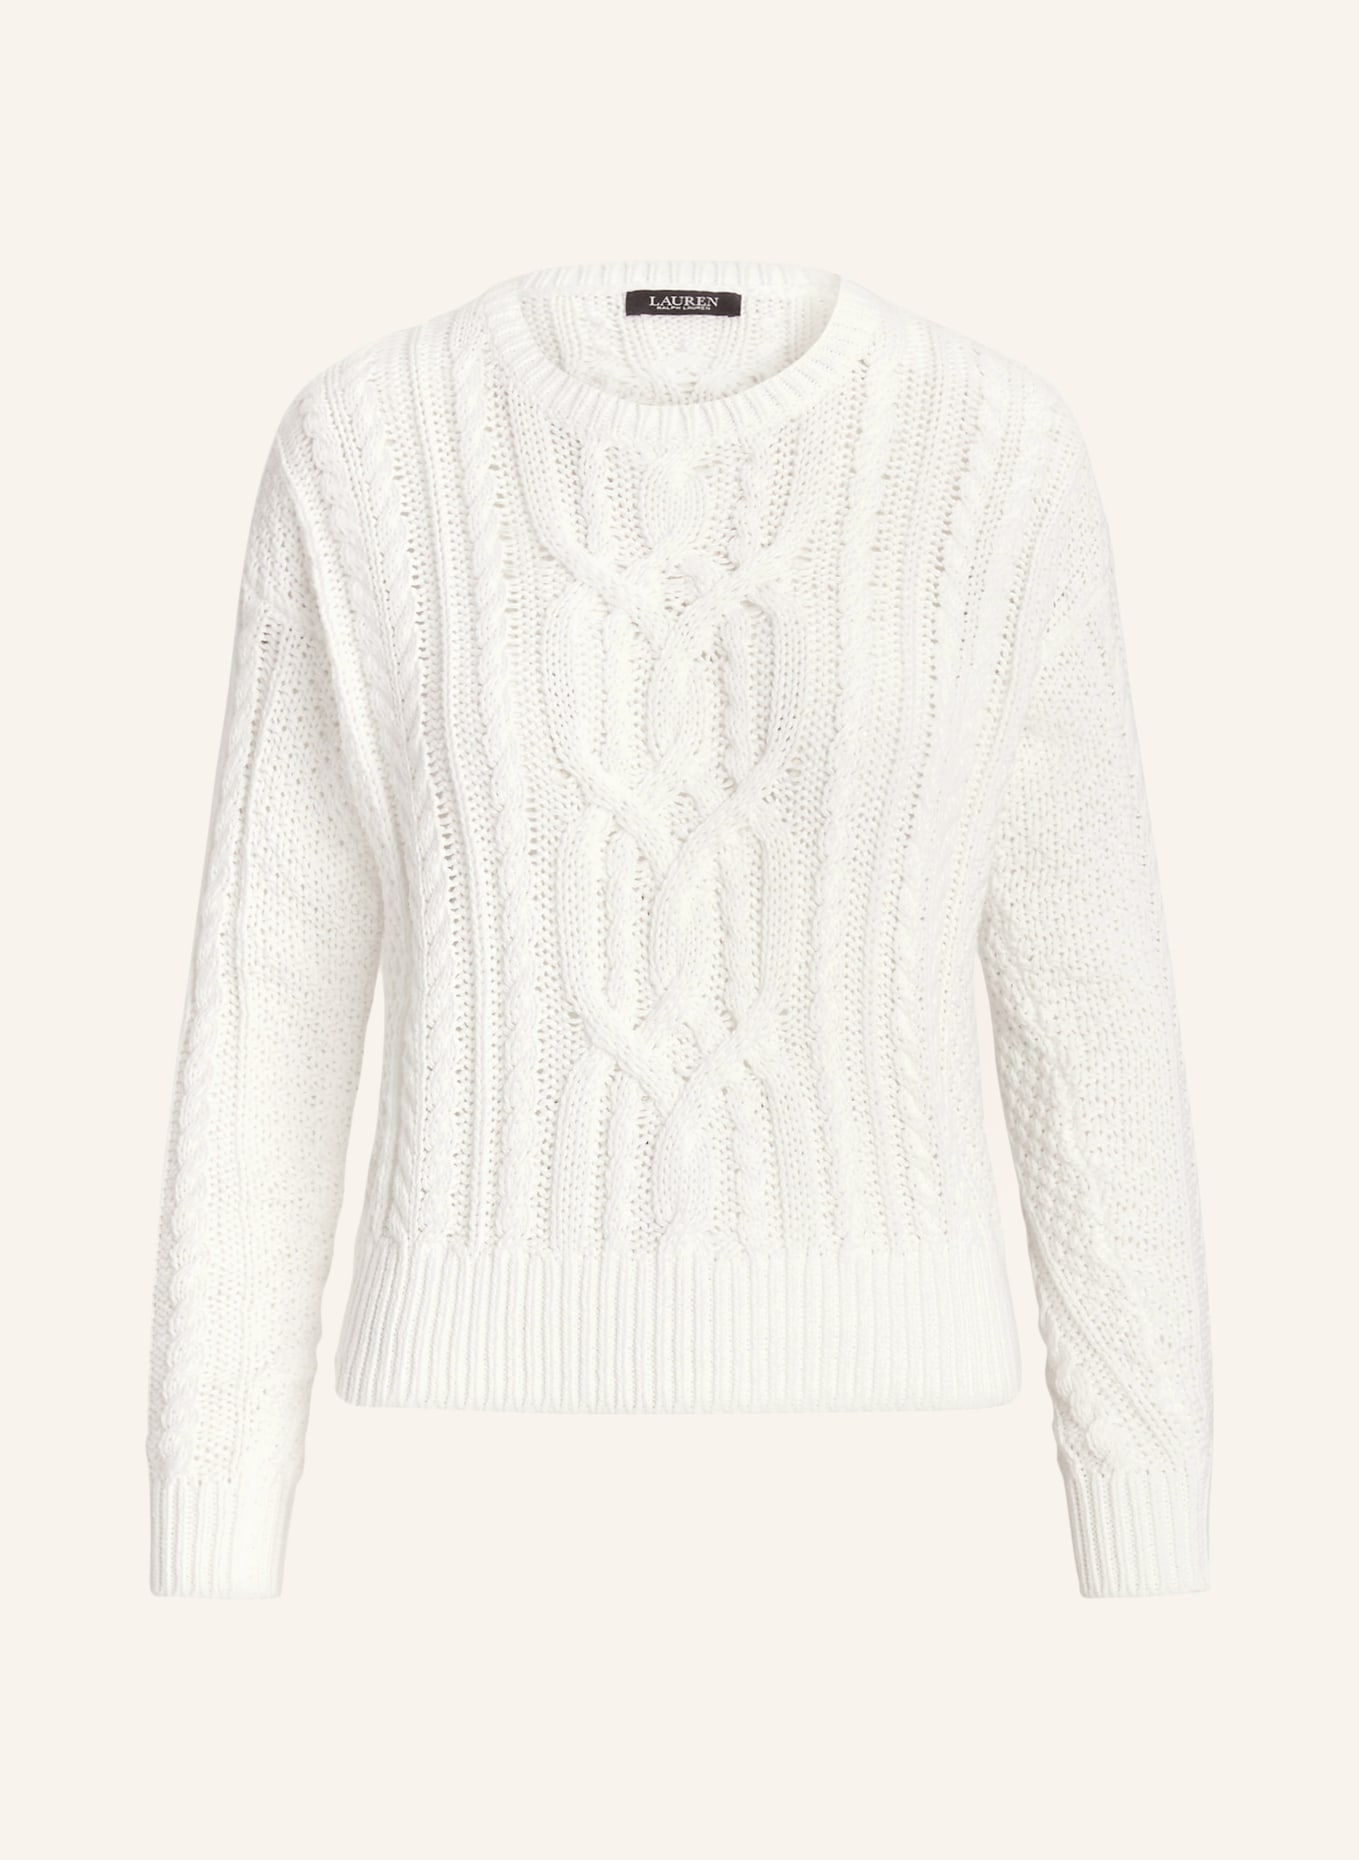 LAUREN RALPH LAUREN Sweater, Color: WHITE (Image 1)